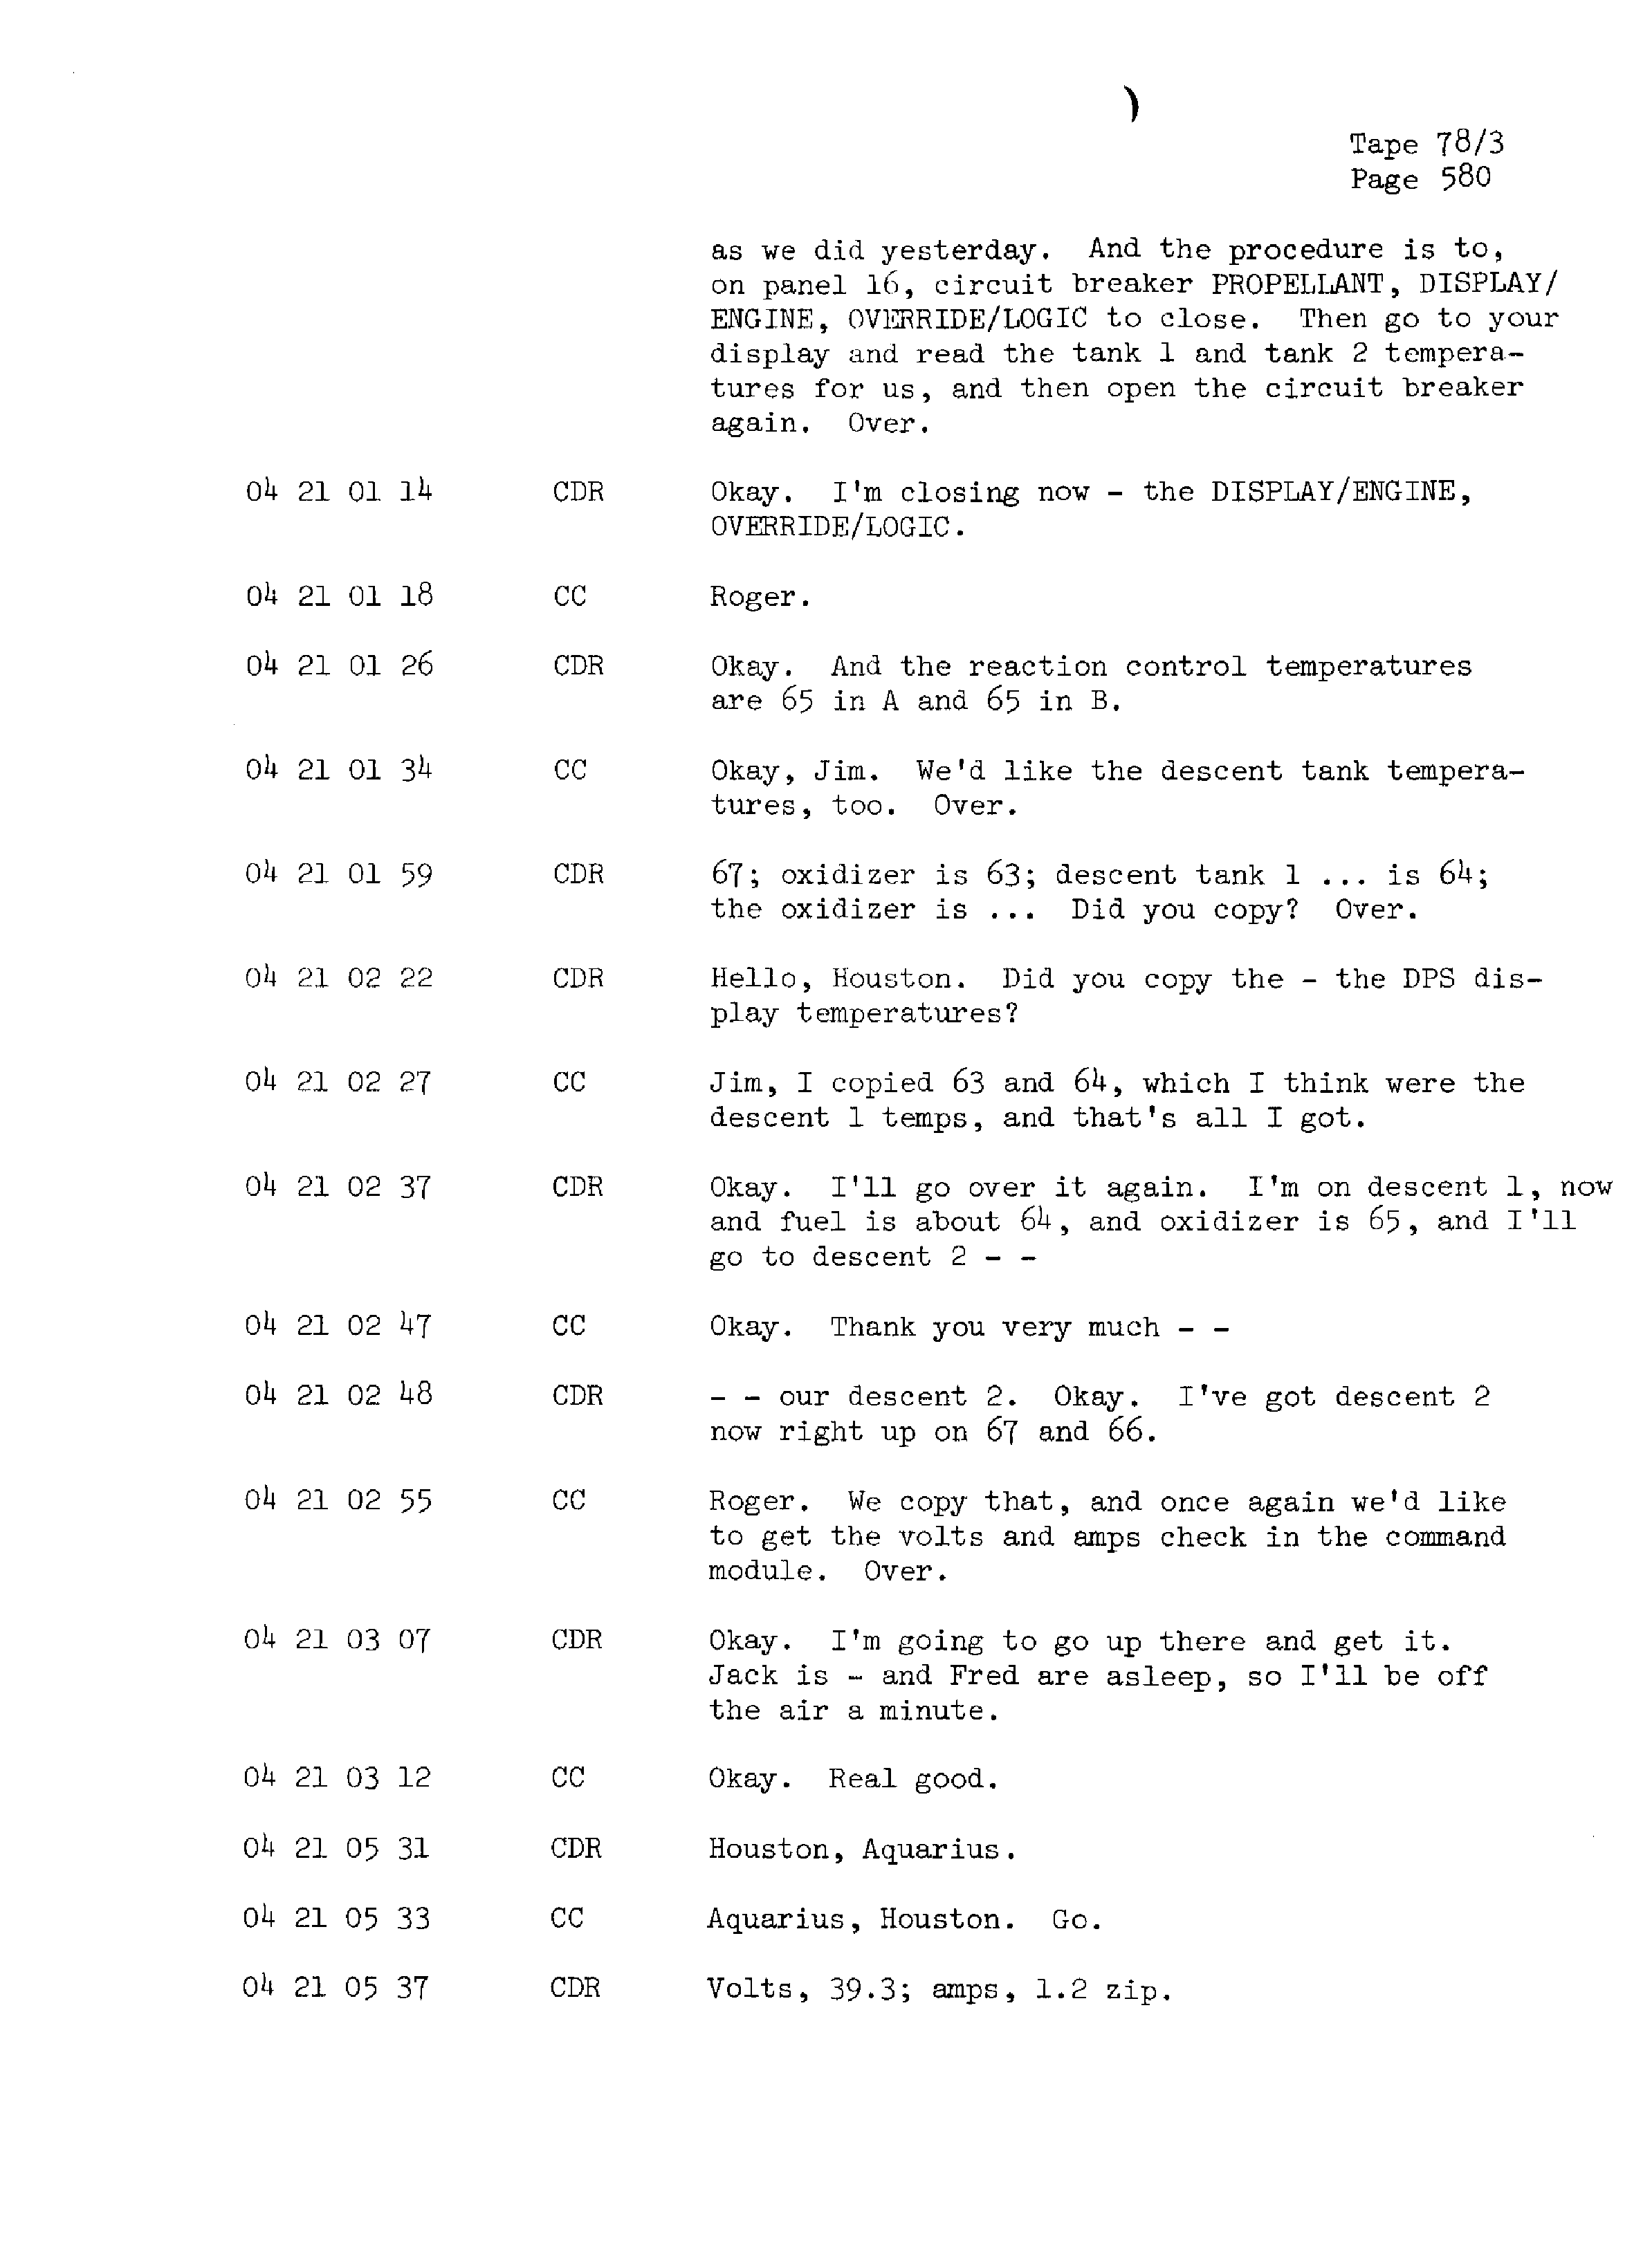 Page 587 of Apollo 13’s original transcript